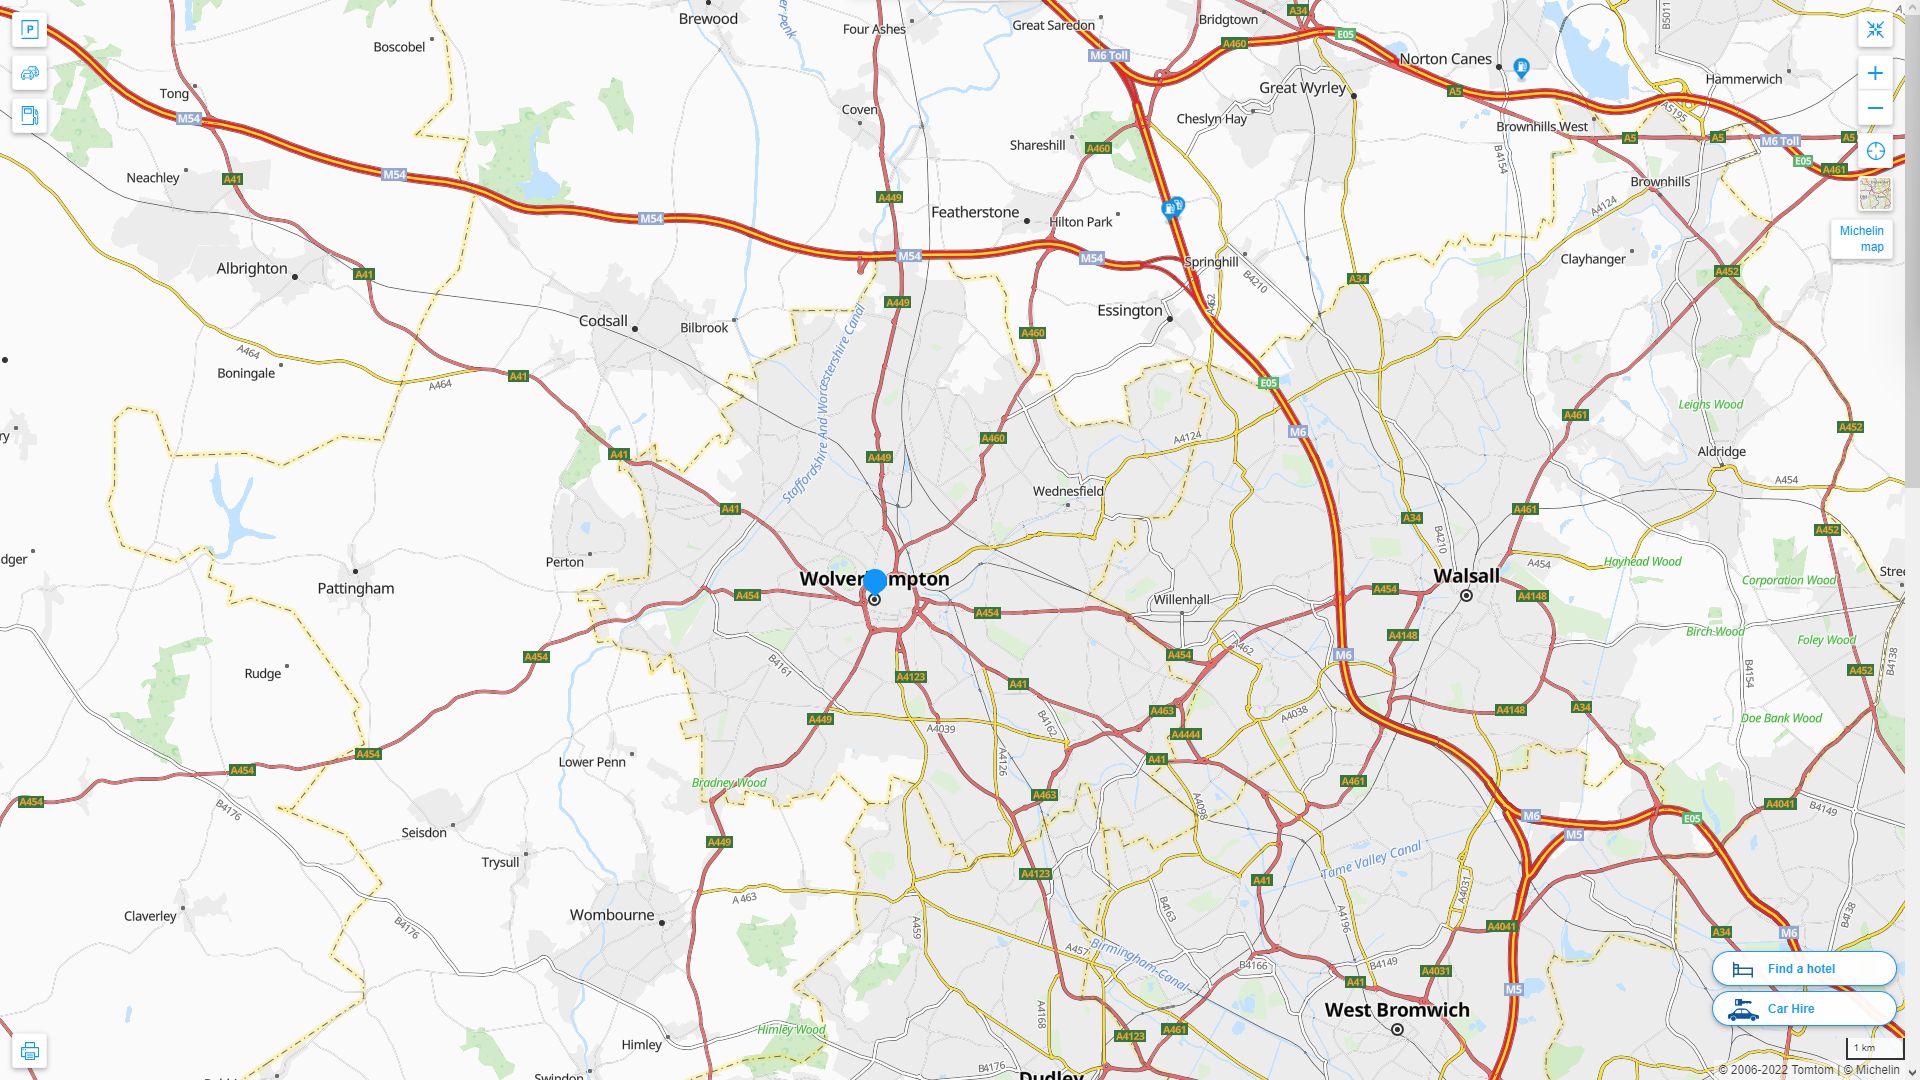 Wolverhampton Royaume Uni Autoroute et carte routiere